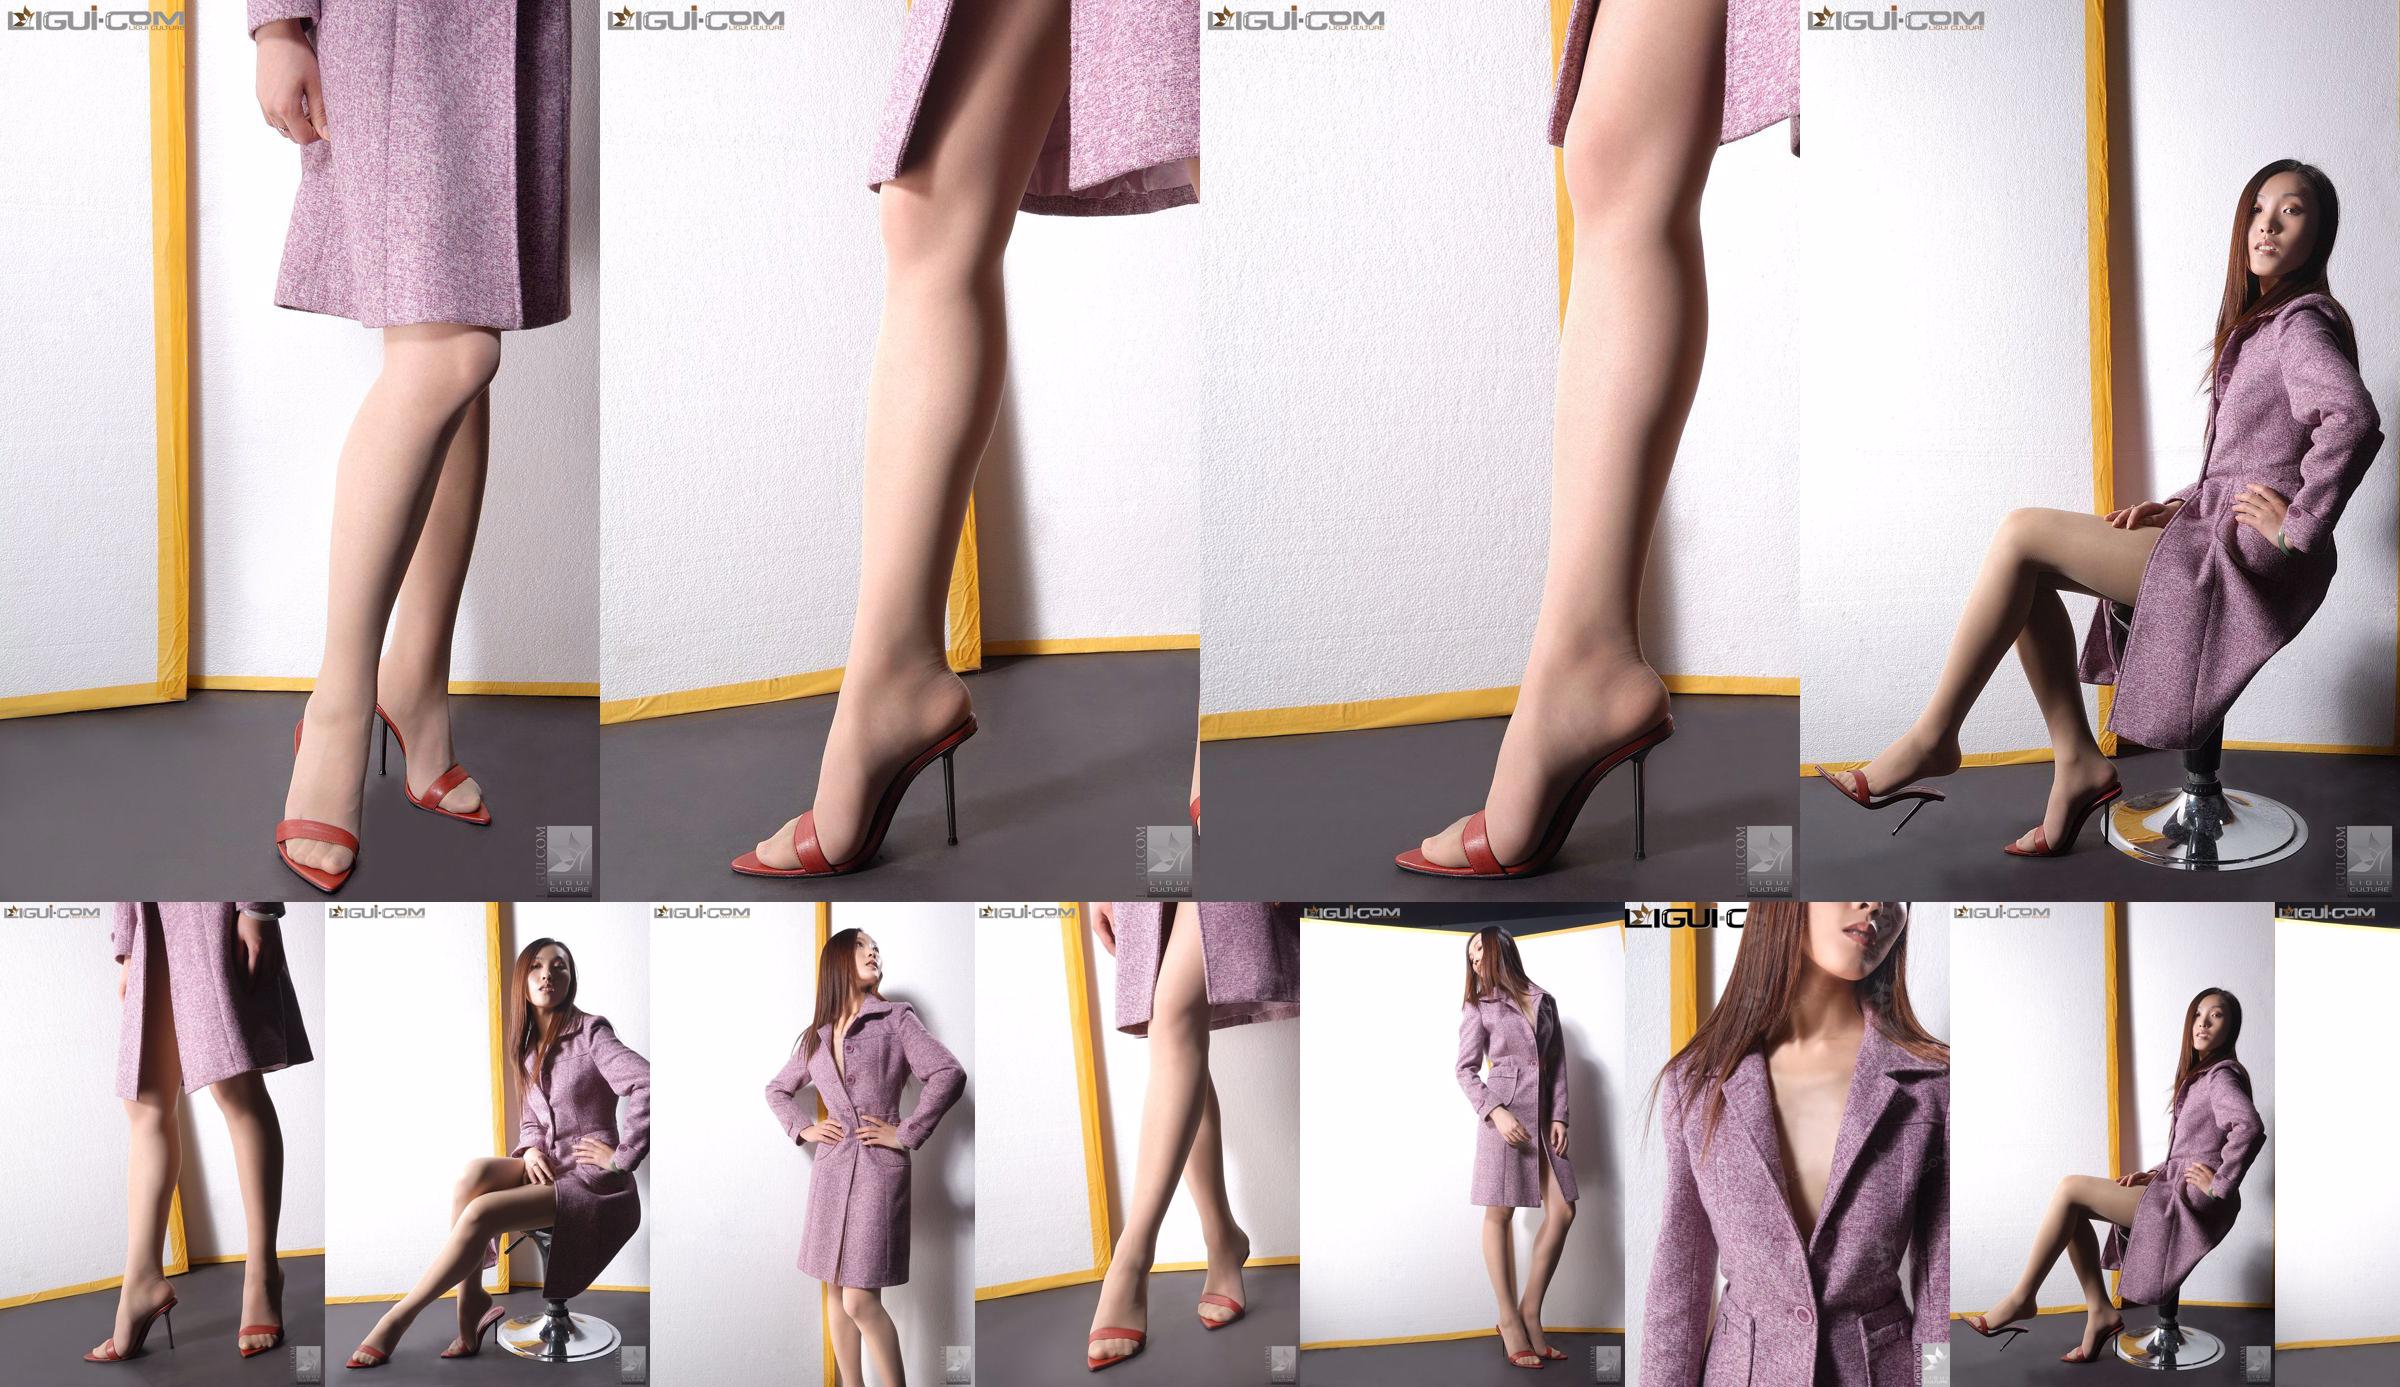 Model Zhang Ai "Eibenmädchen mit hohen Absätzen" [Ligui LiGui] Foto von schönen Beinen und Füßen No.70fe38 Seite 1